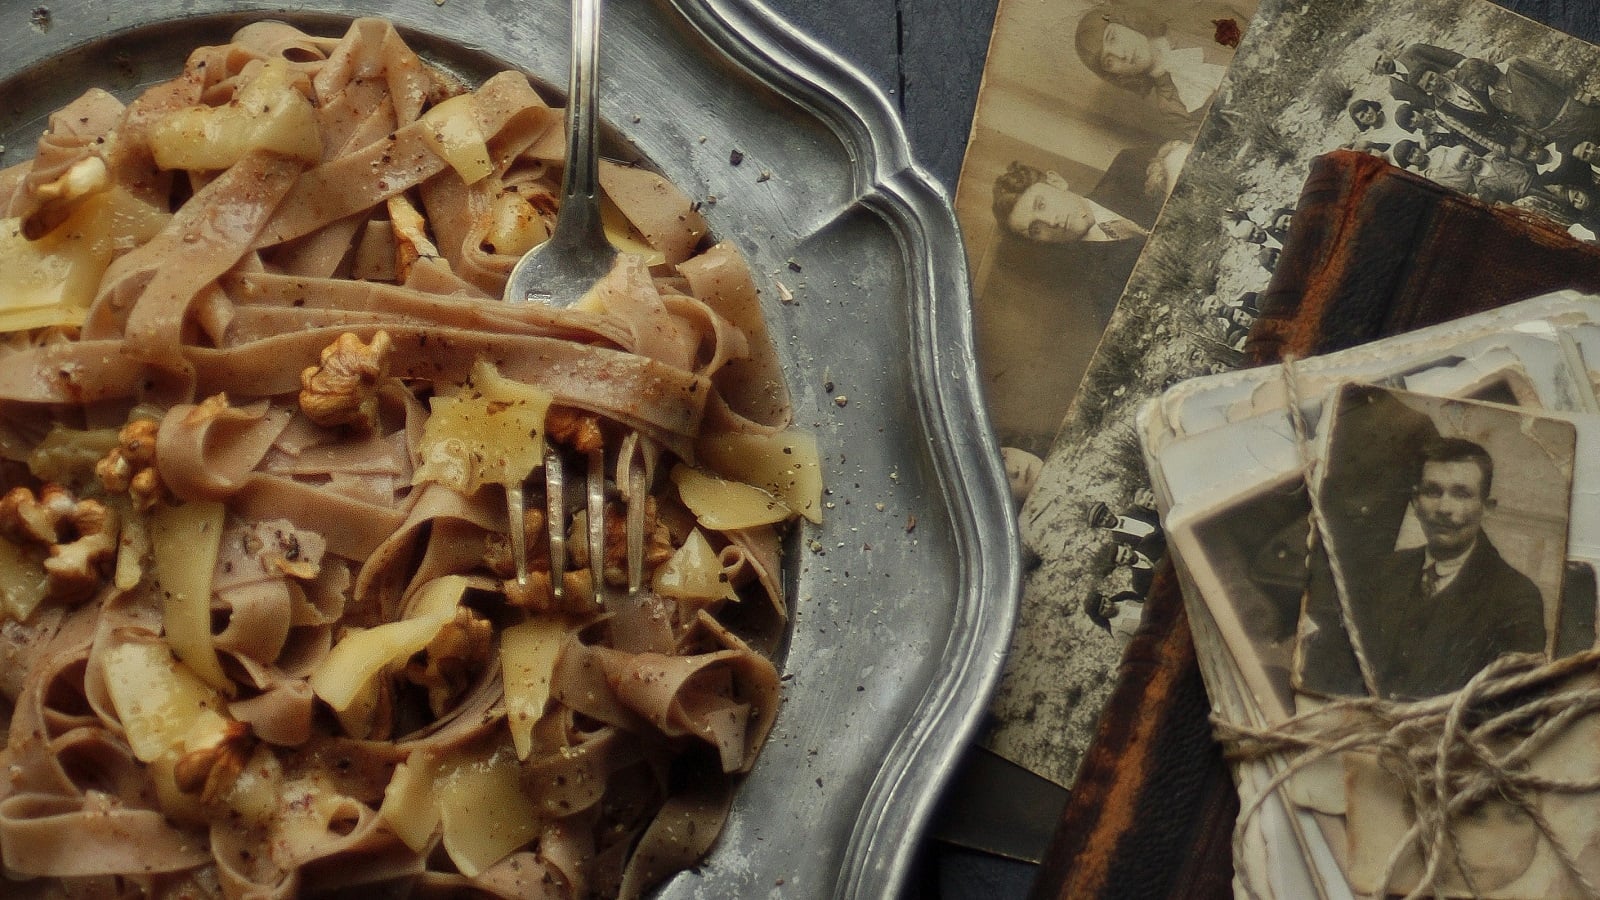 Ein silbener Teller mit einer Portion selbstgemachter Kastanien-Pasta mit Walnusssoße, garniert mit Parmesanscheiben und Walnüssen neben alten Fotografien und Büchern vor einem dunklen Hintergrund, von oben.